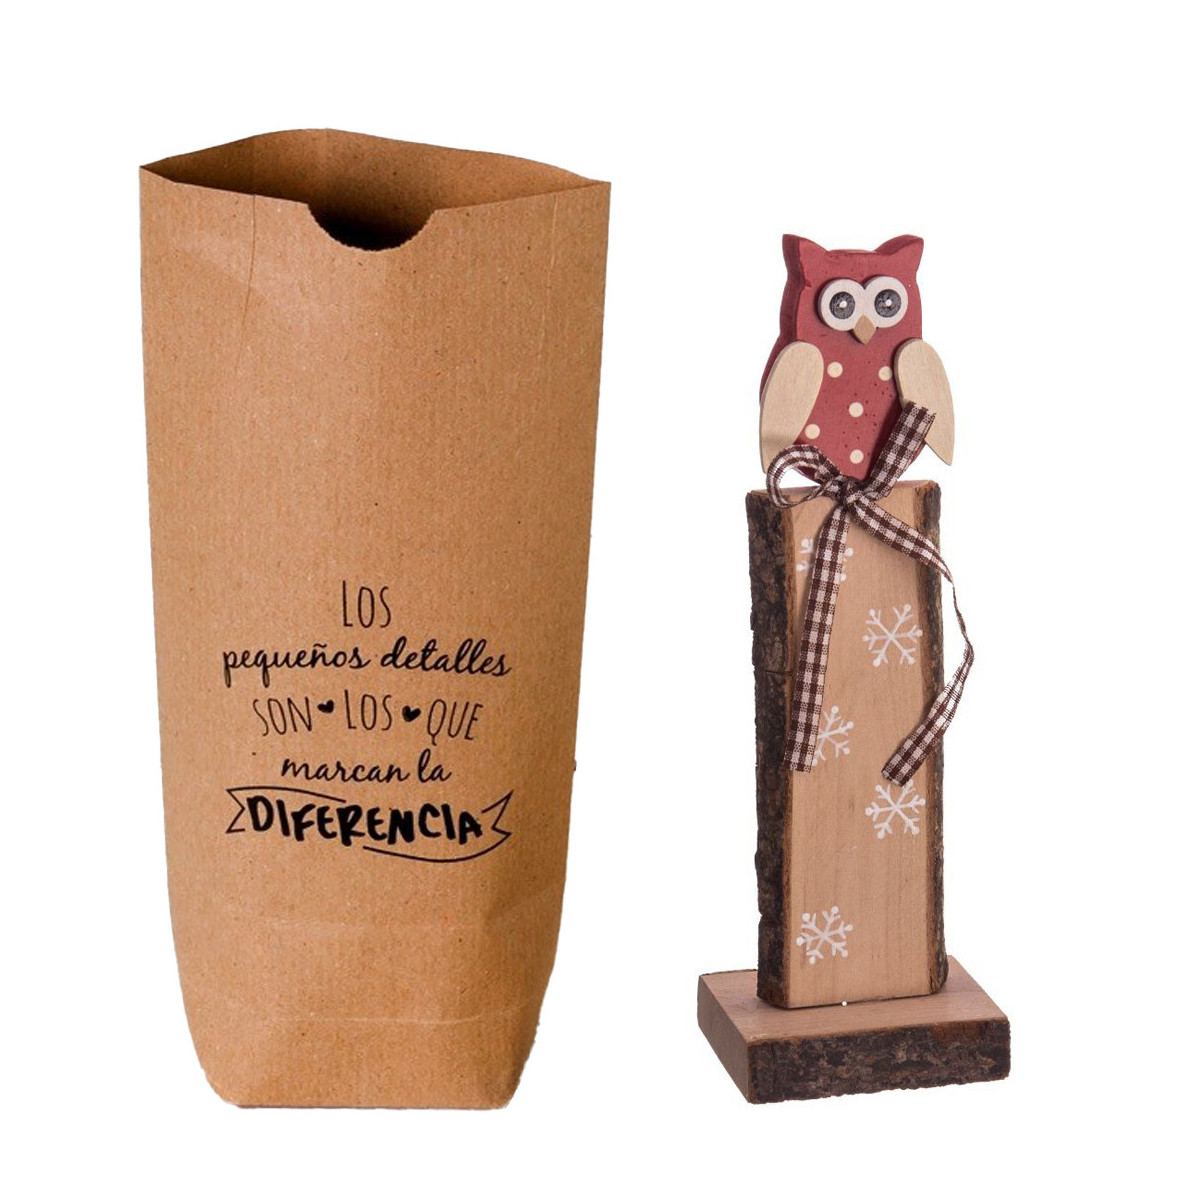 Adorno de navidad en forma de búho de madera en bolsa de papel kraft con frase dedicatoria